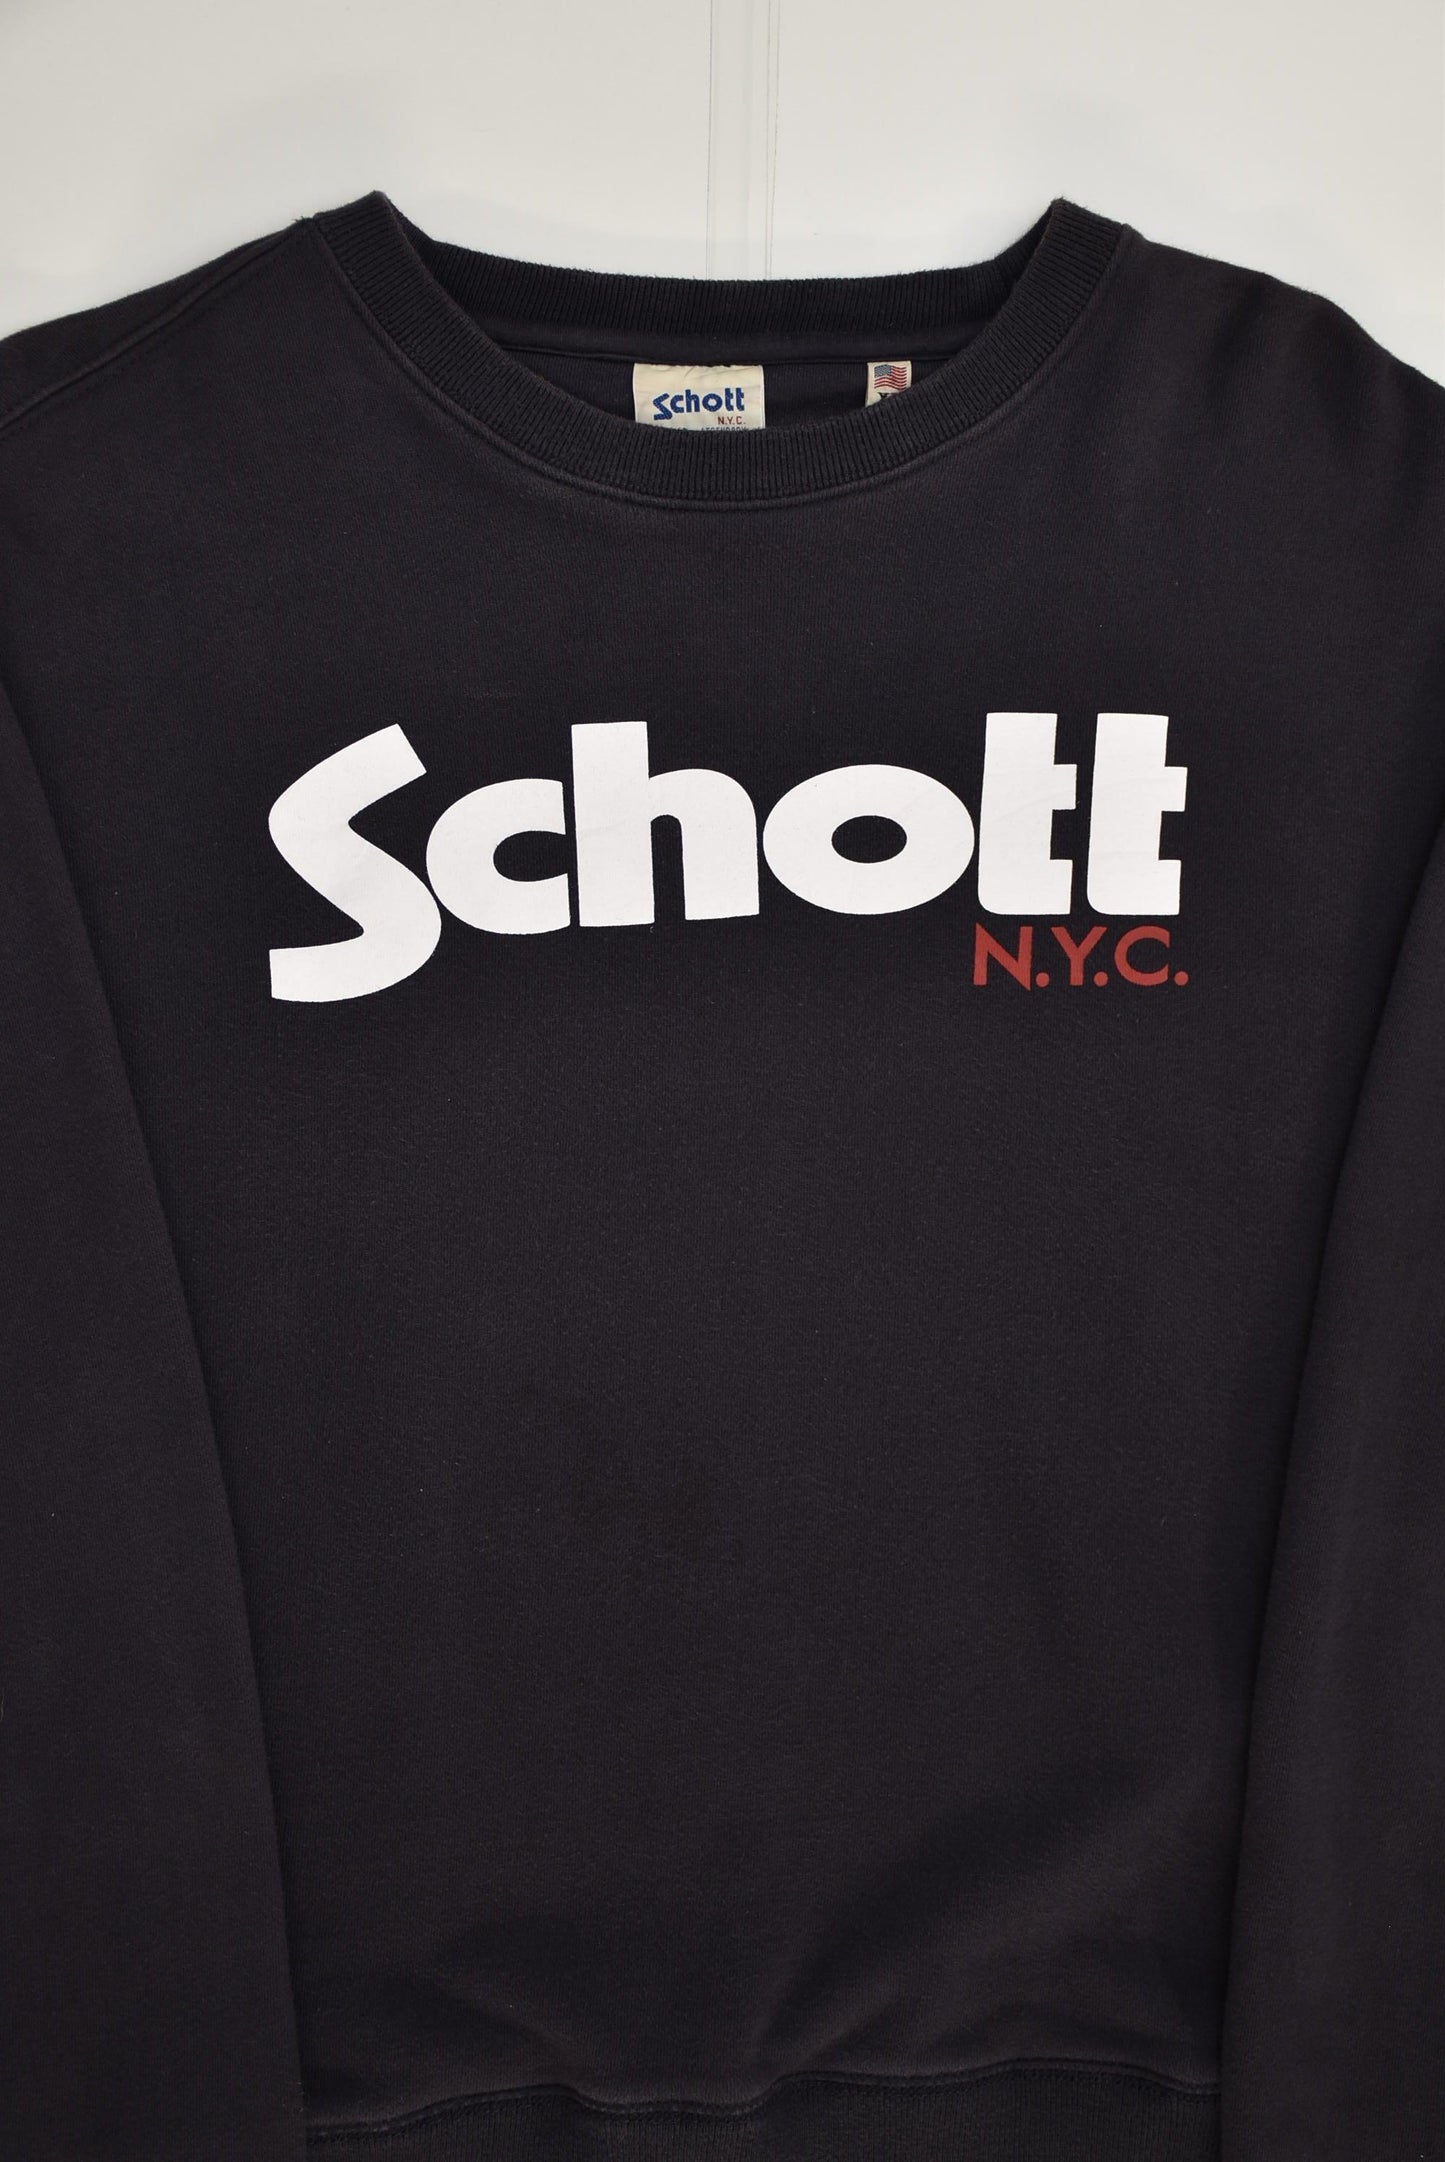 Schott NYC Sweatshirt (L)